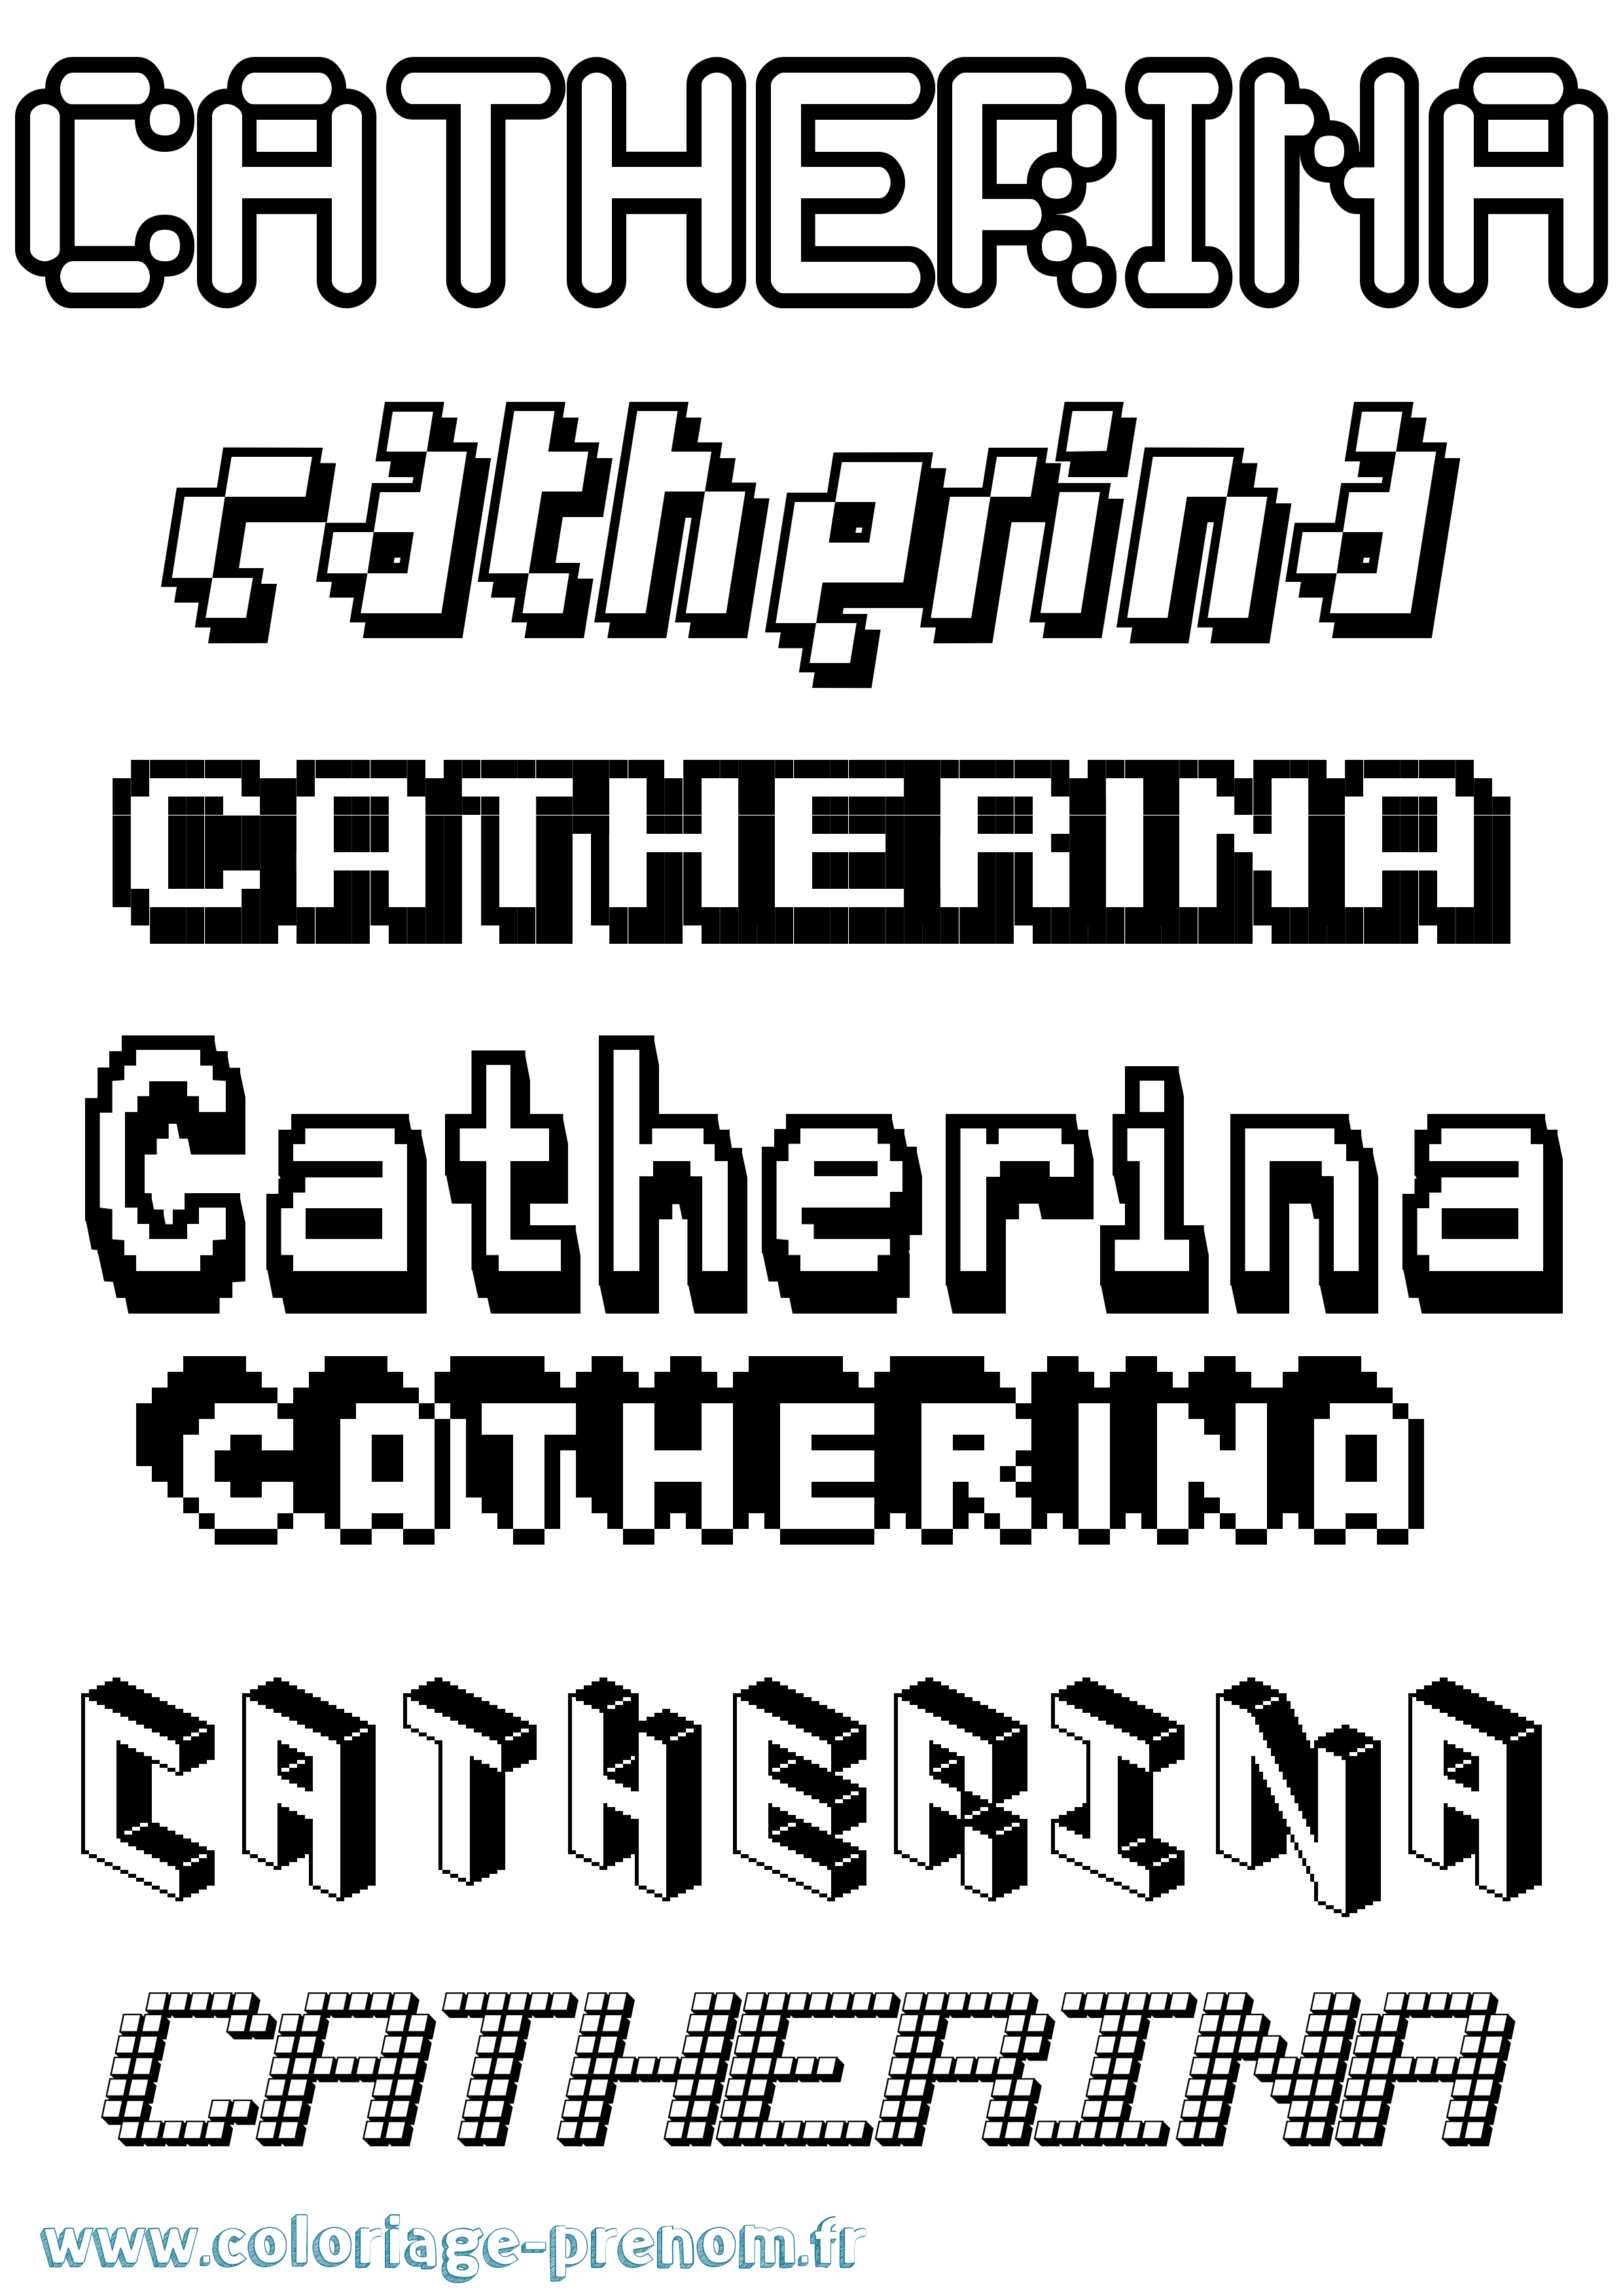 Coloriage prénom Catherina Pixel